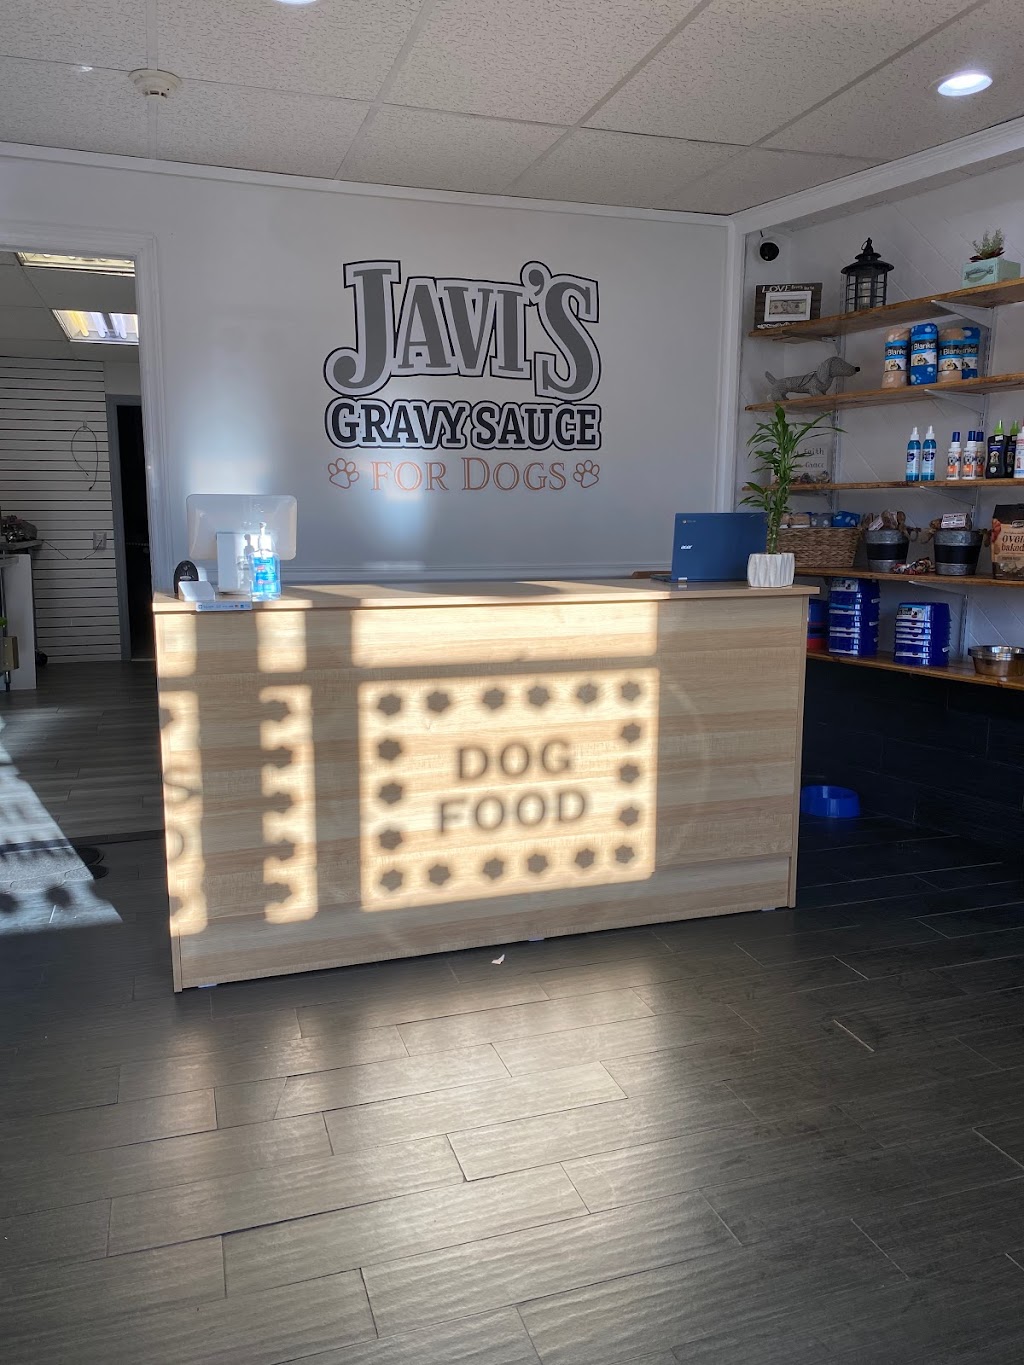 Javis Gravy Sauce For Dogs | 177 S Center St, Merchantville, NJ 08109 | Phone: (856) 477-3351